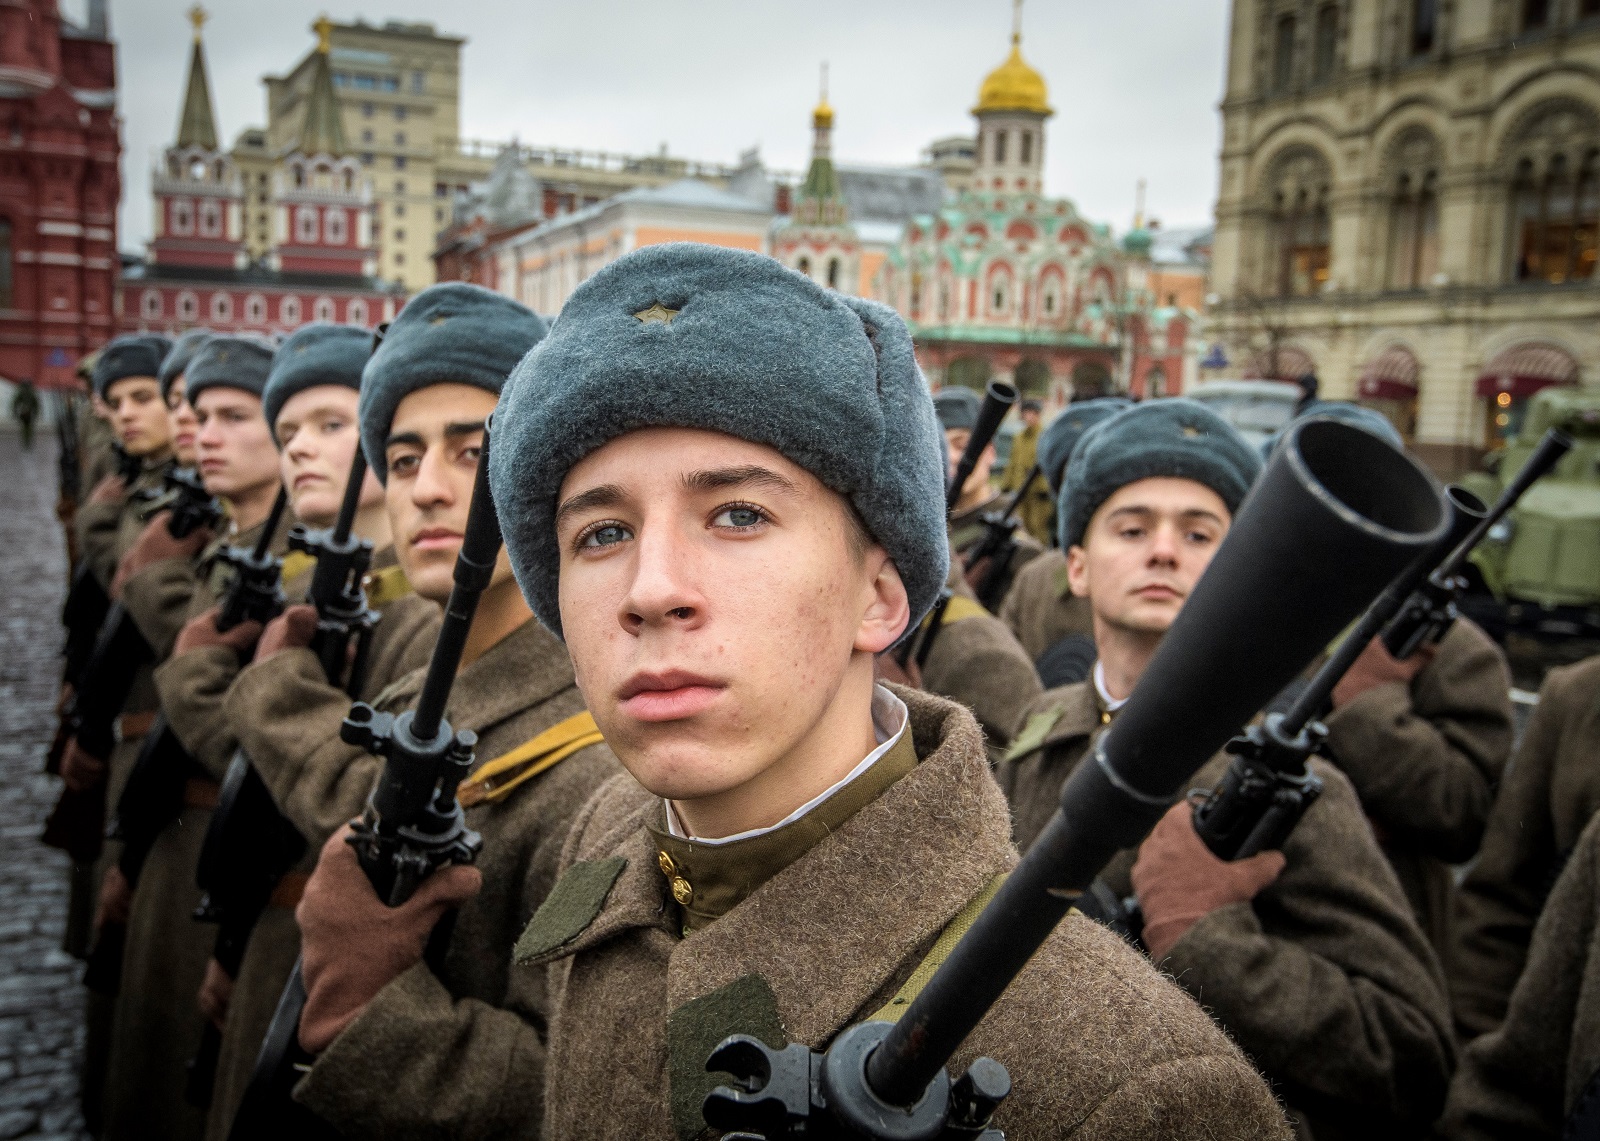 Árulásnak számít az önkéntes megadás, az orosz katonáknak kötelességük az életük árán is harcolni